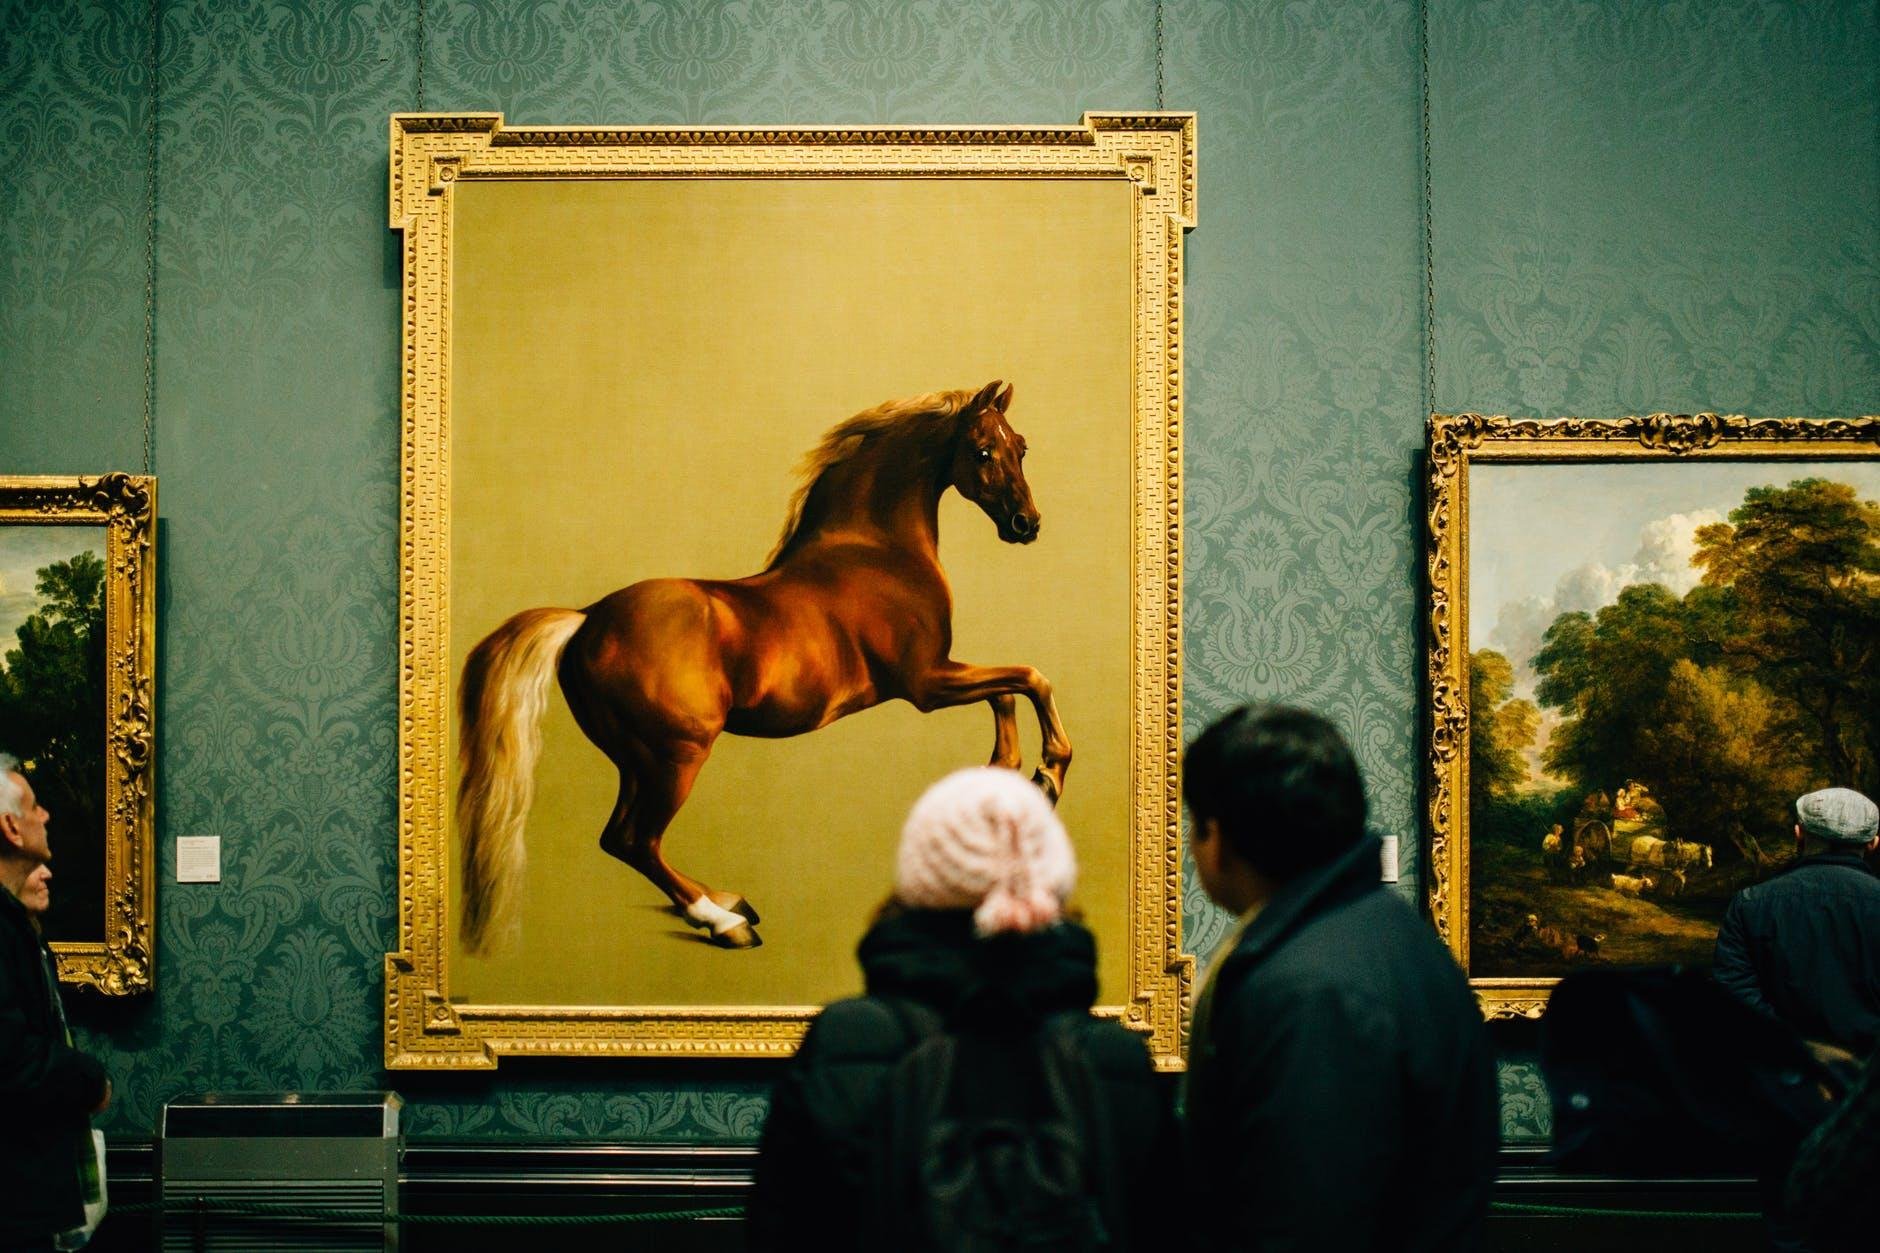 Сайт картин. Картина лошади в музее. Галерея картины с лошадьми. Конь картинная галерея. Картины с лошадьми выставка.